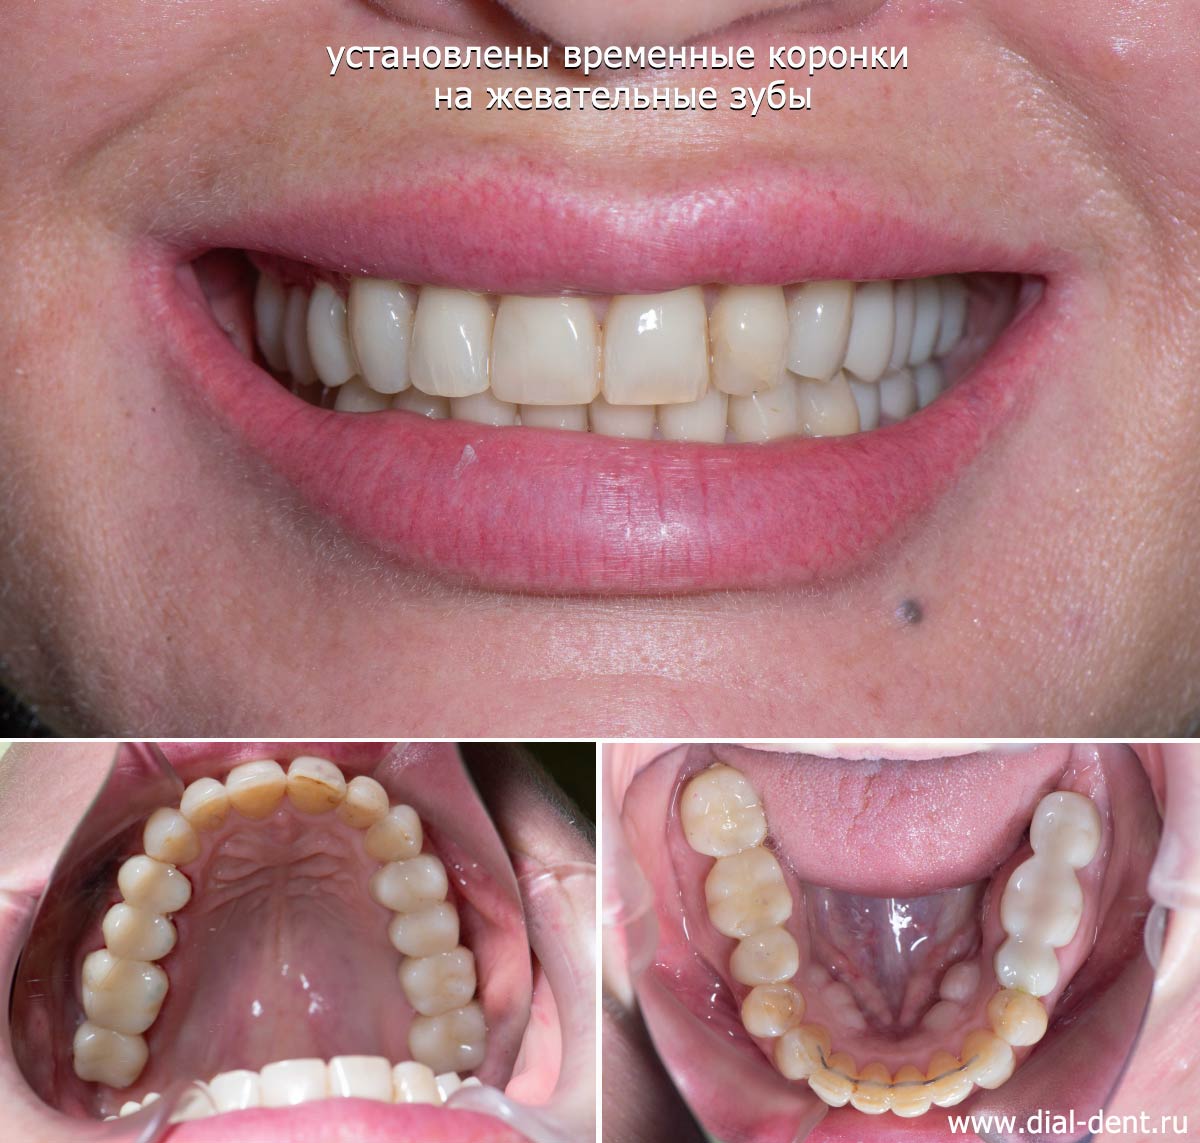 временные коронки на жевательных зубах и имплантах